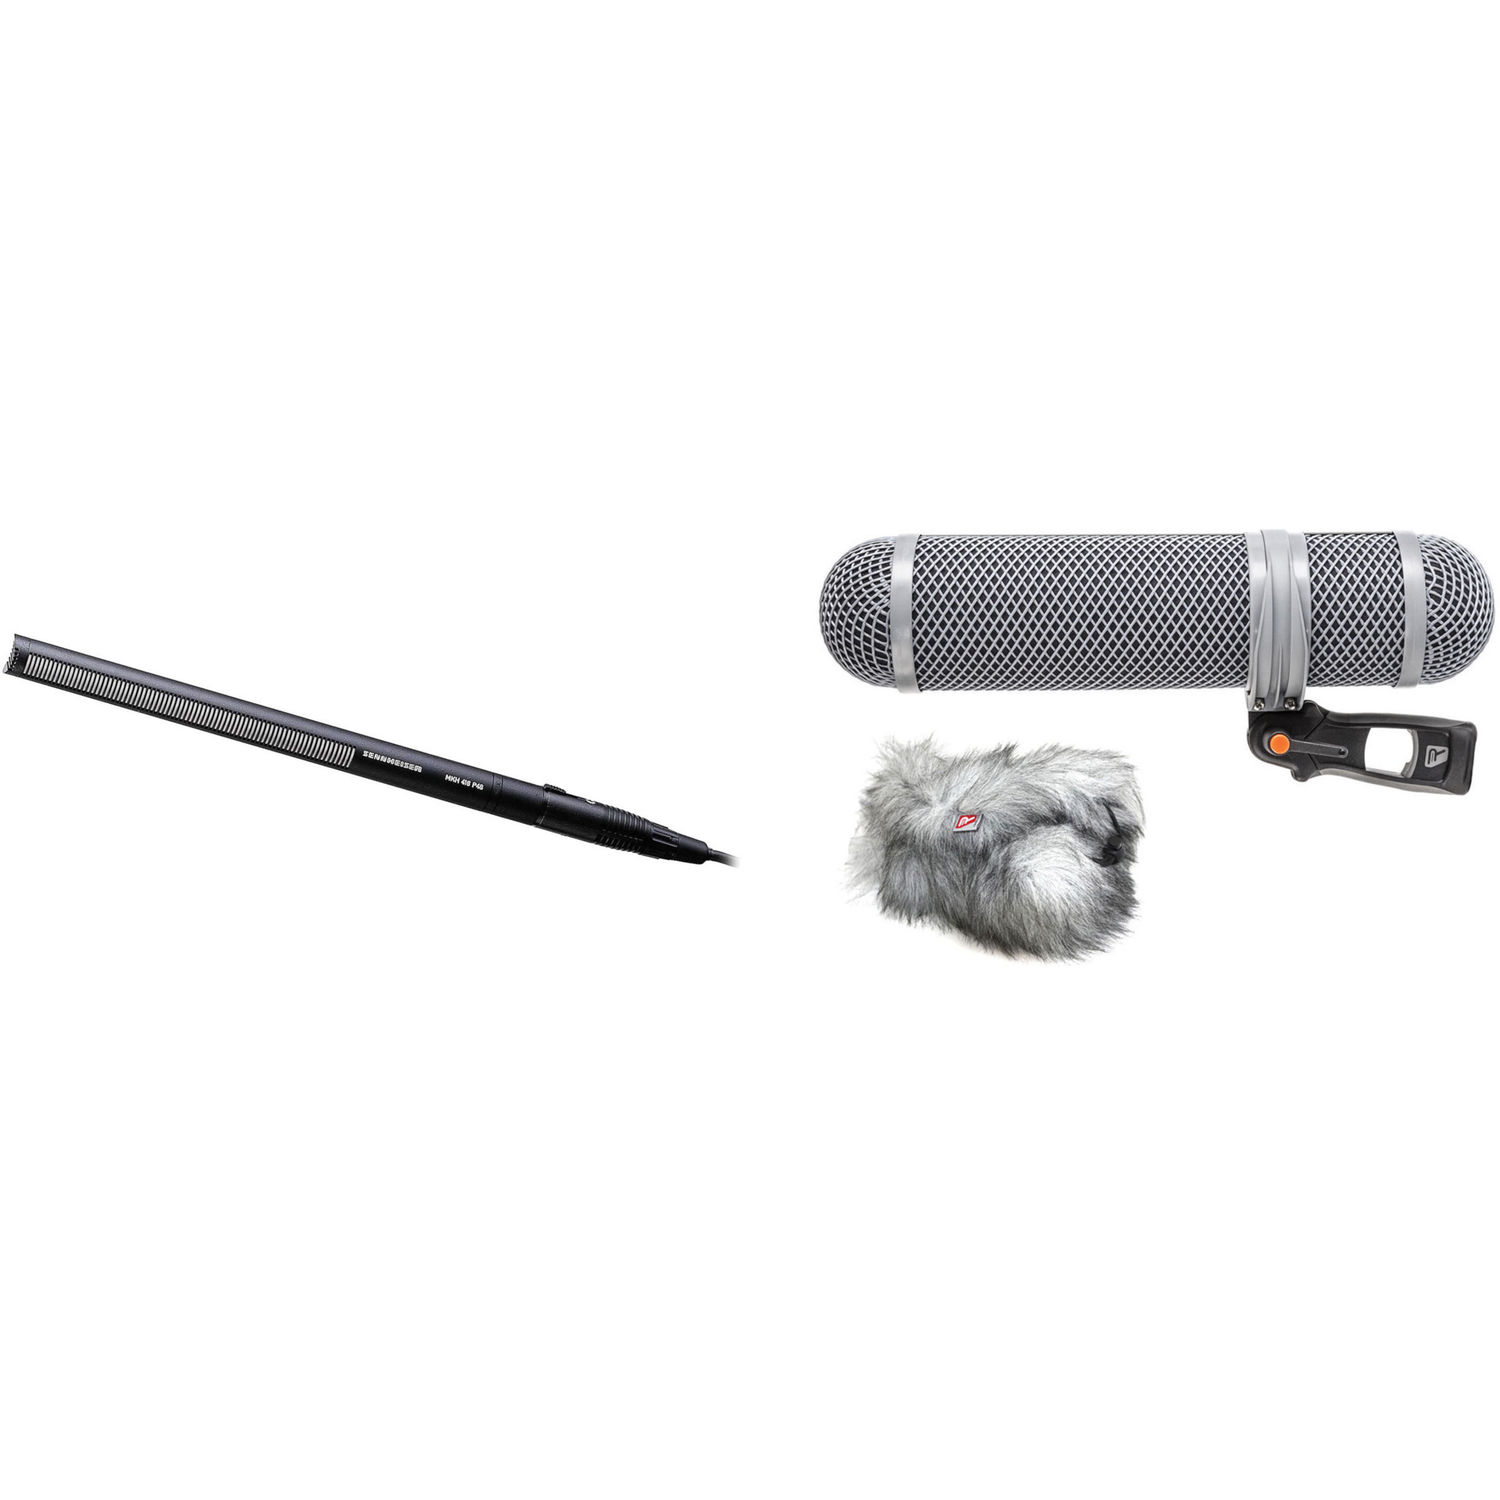 Micrófono de Cañón Resistente a La Humedad Sennheiser Mkh 416 P48U3 y Kit Rycote Super Shield